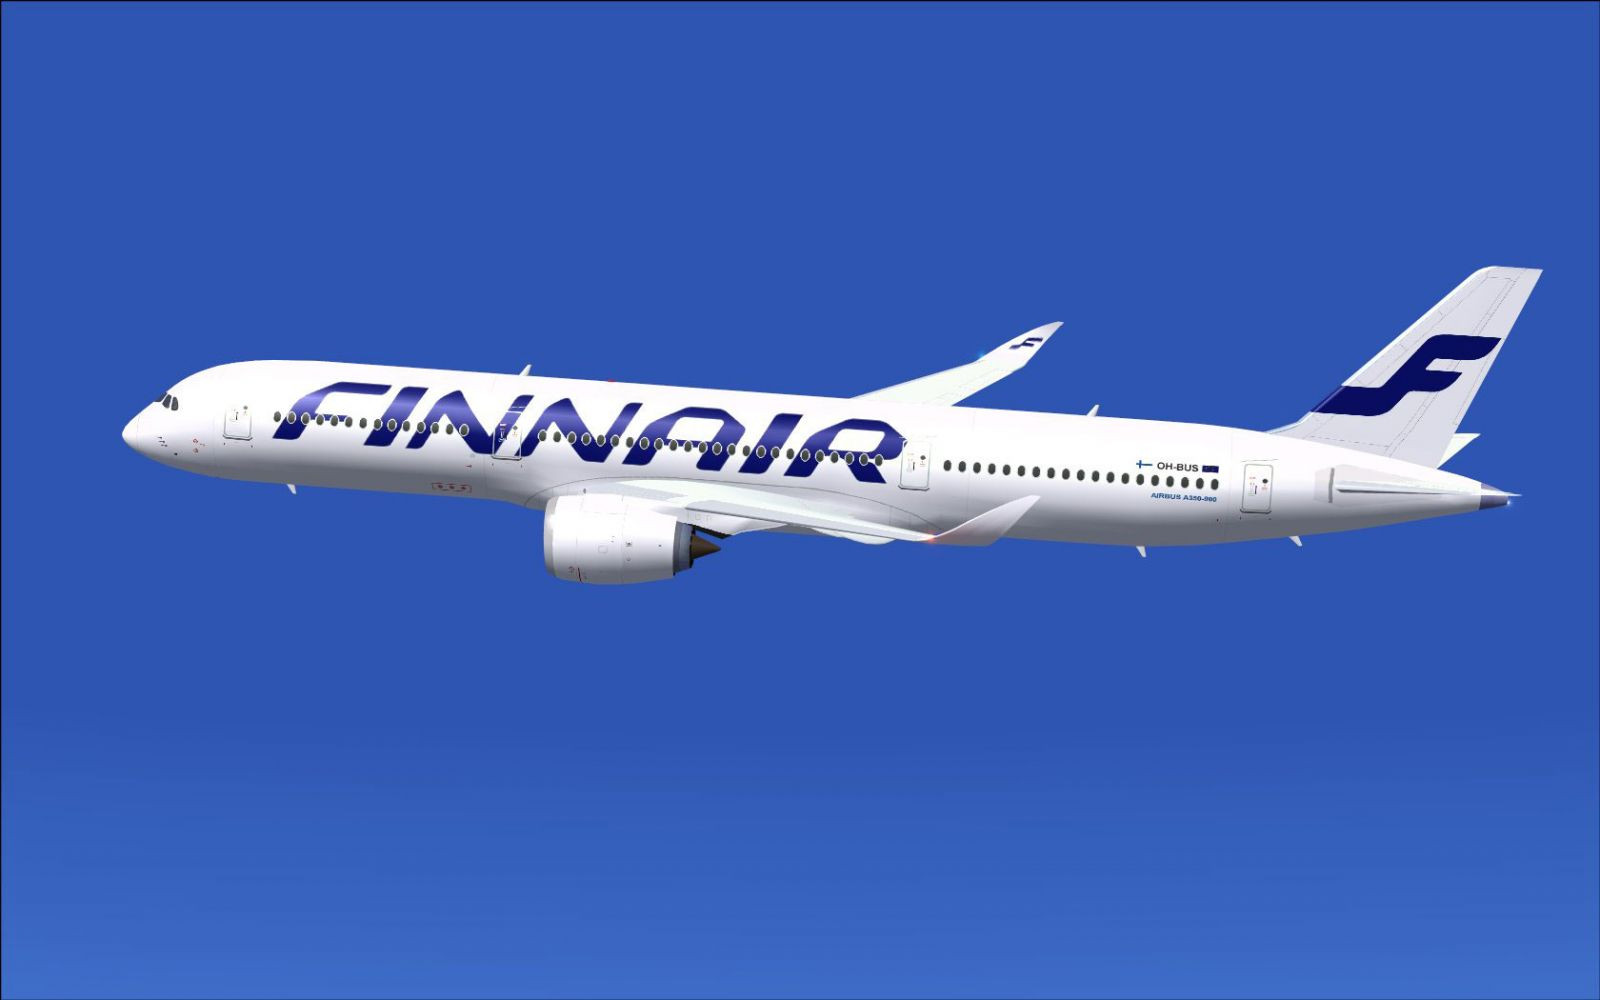 FinnairairbusA350900fsx1